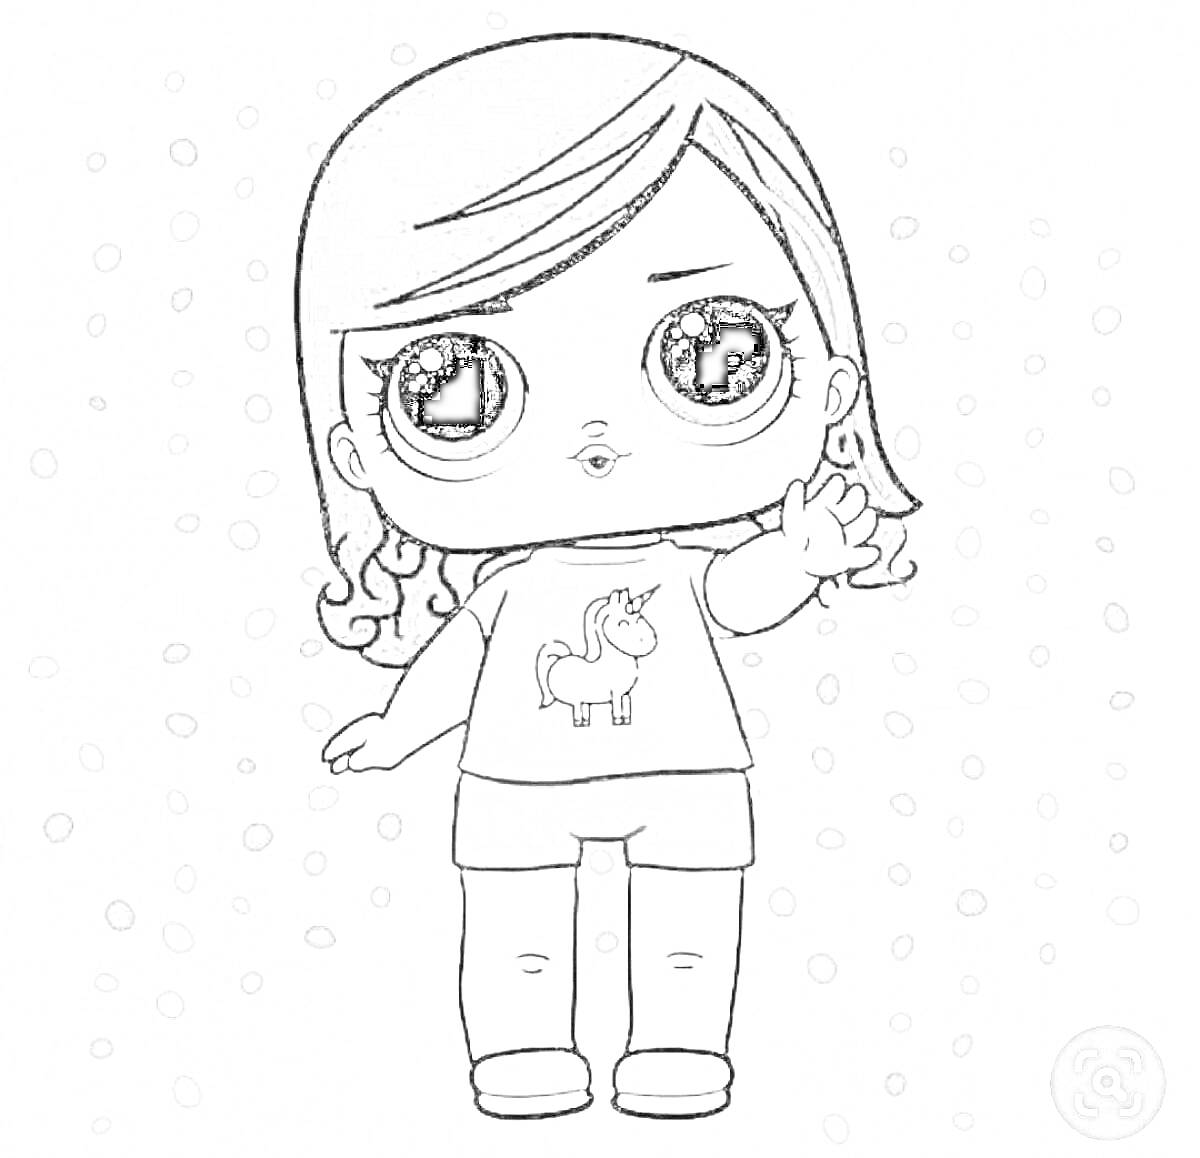 Раскраска Девочка ЛОЛ с длинными волосами, футболка с единорогом, шорты, поднятая рука, узор из точек на заднем плане